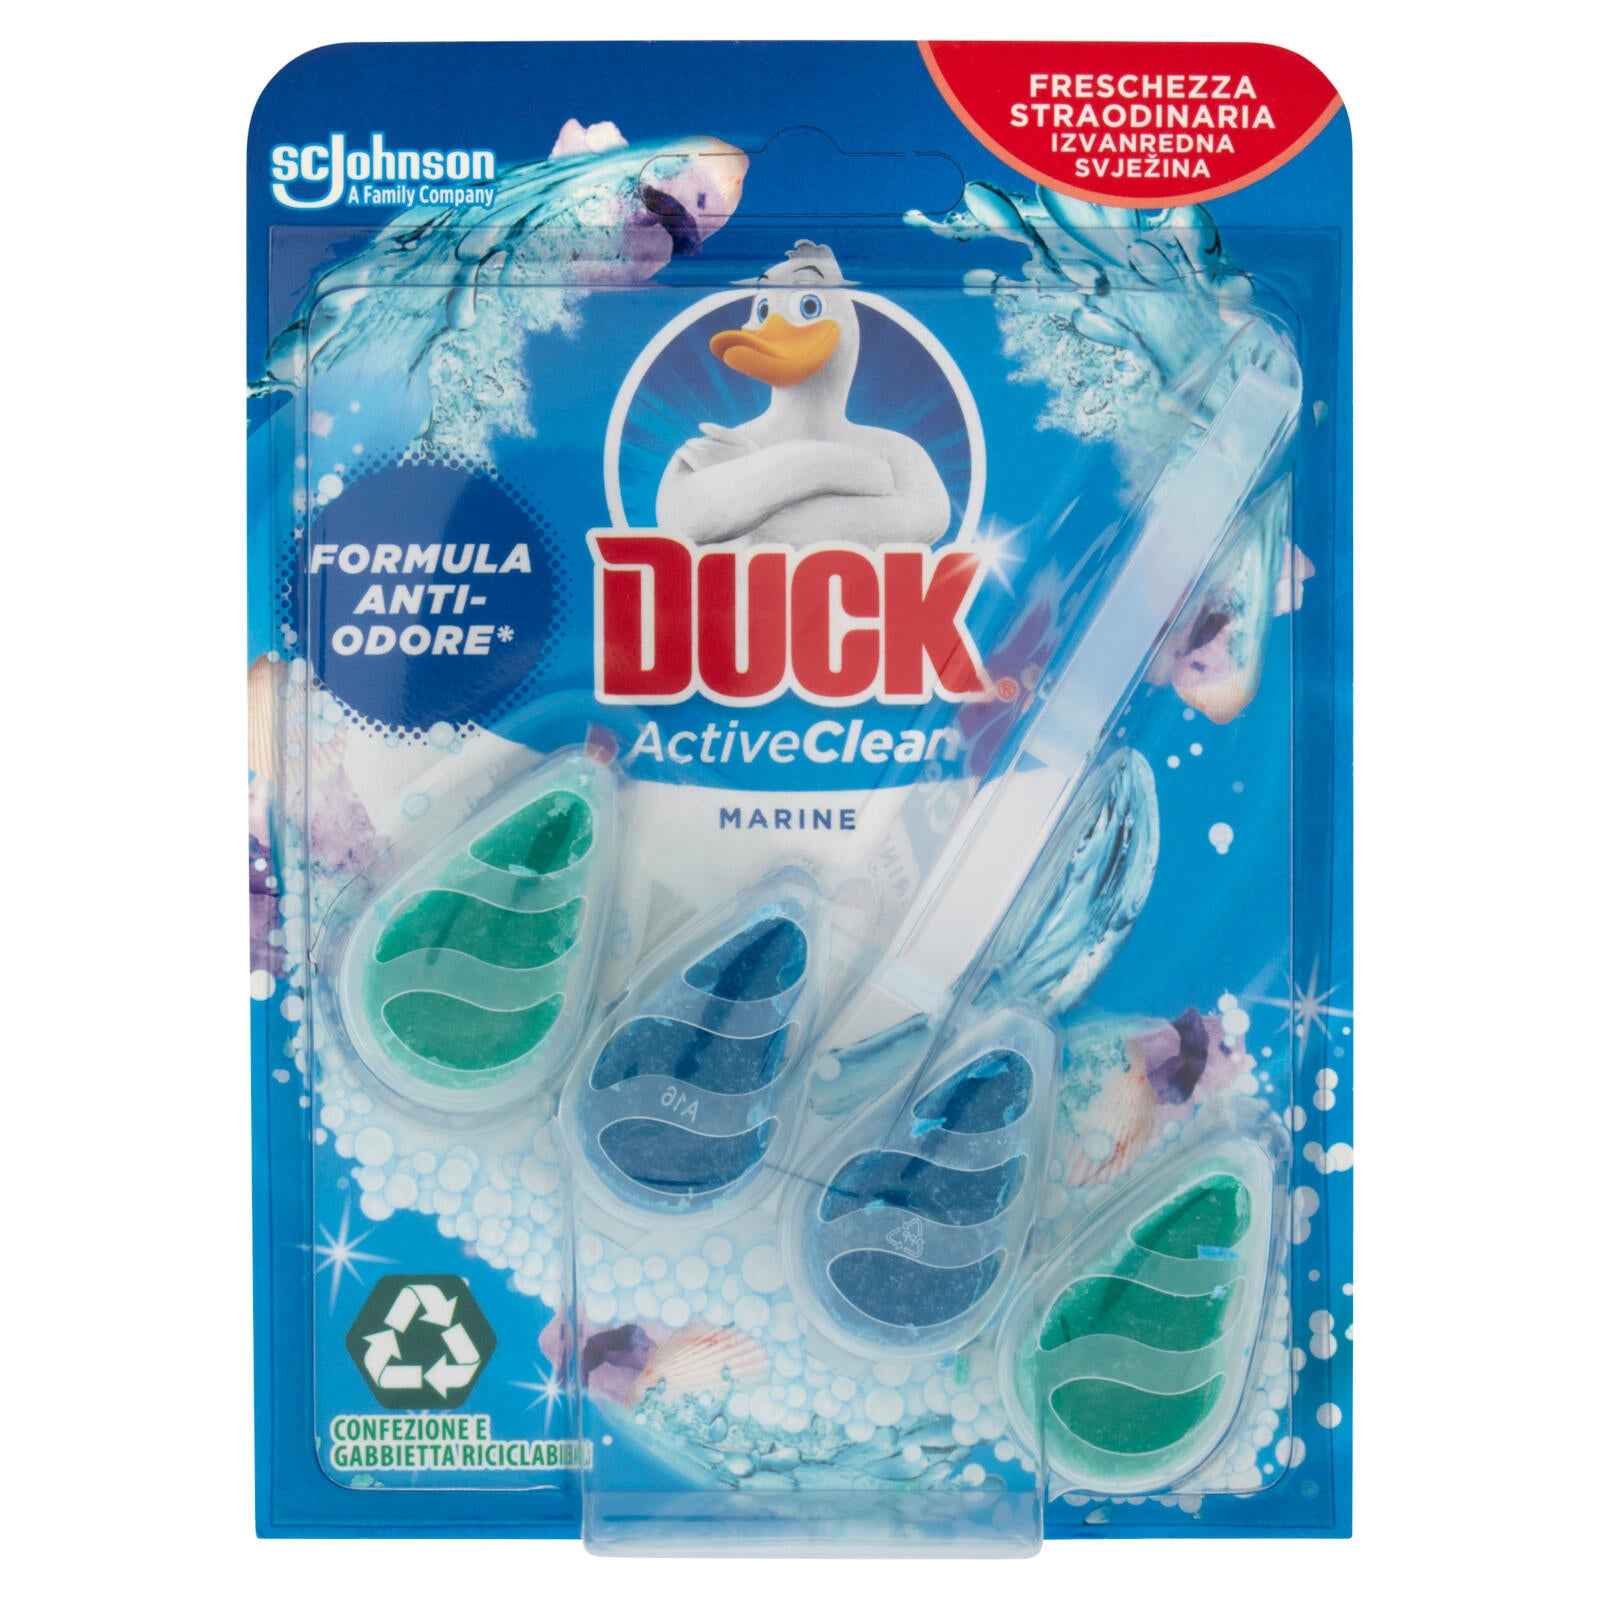 Duck Active Clean - Tavoletta Igienizzante WC, Fragranza Marine, 38,6 g